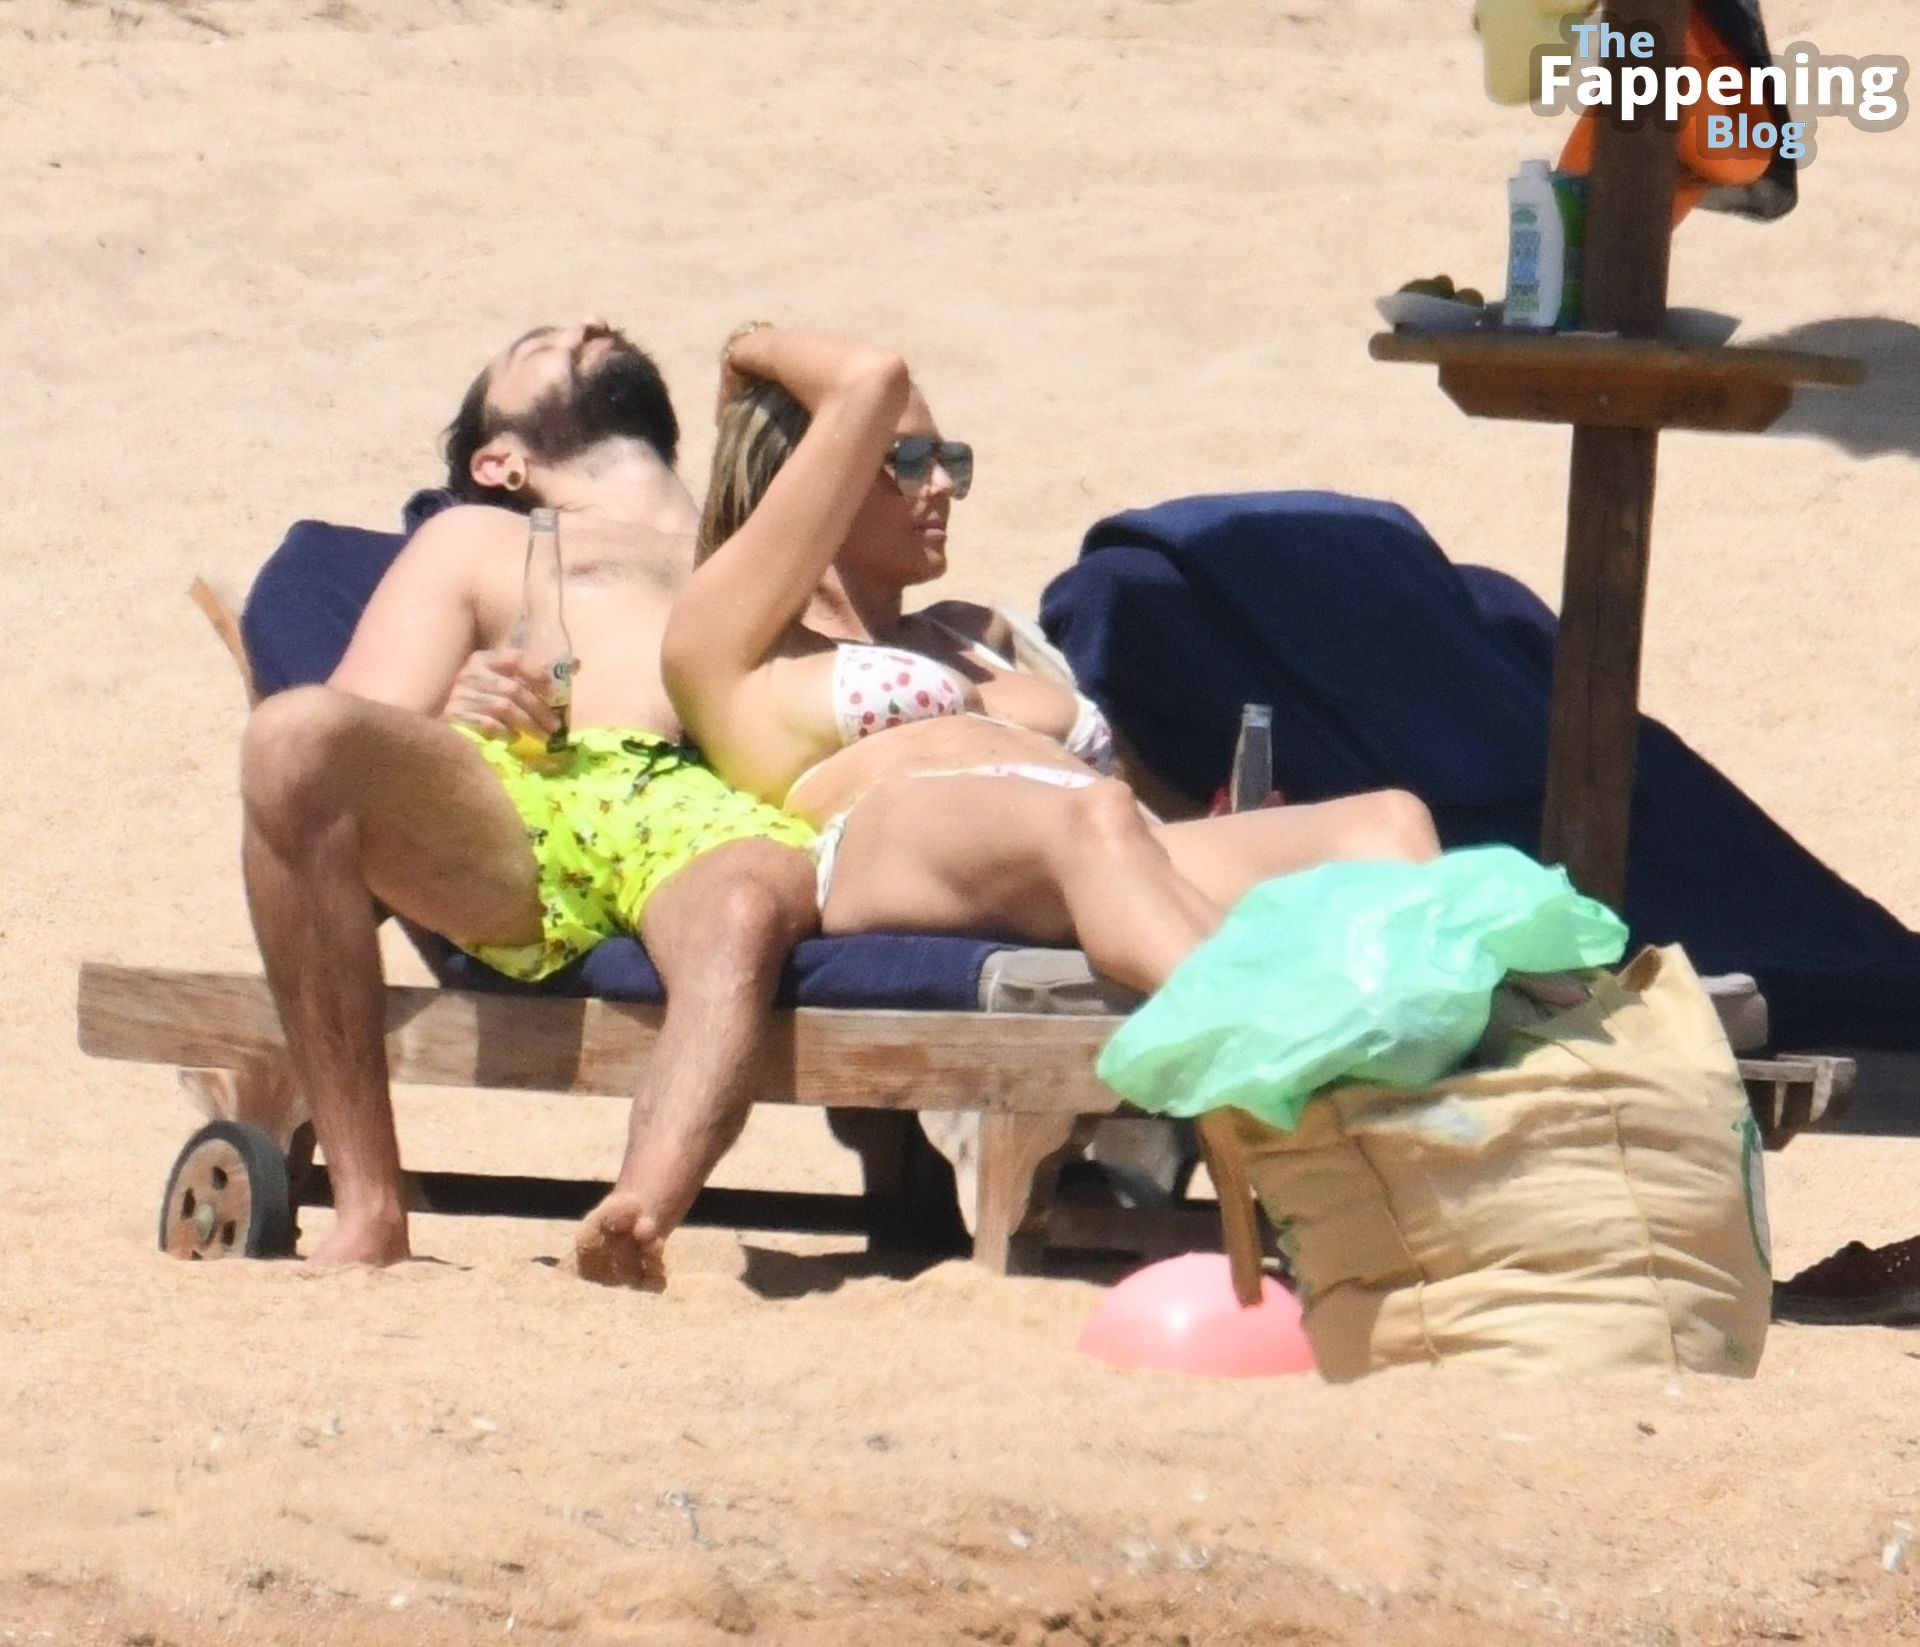 Heidi Klum &amp; Tom Kaulitz Enjoy a Day on the Beach in Sardinia (70 Photos)